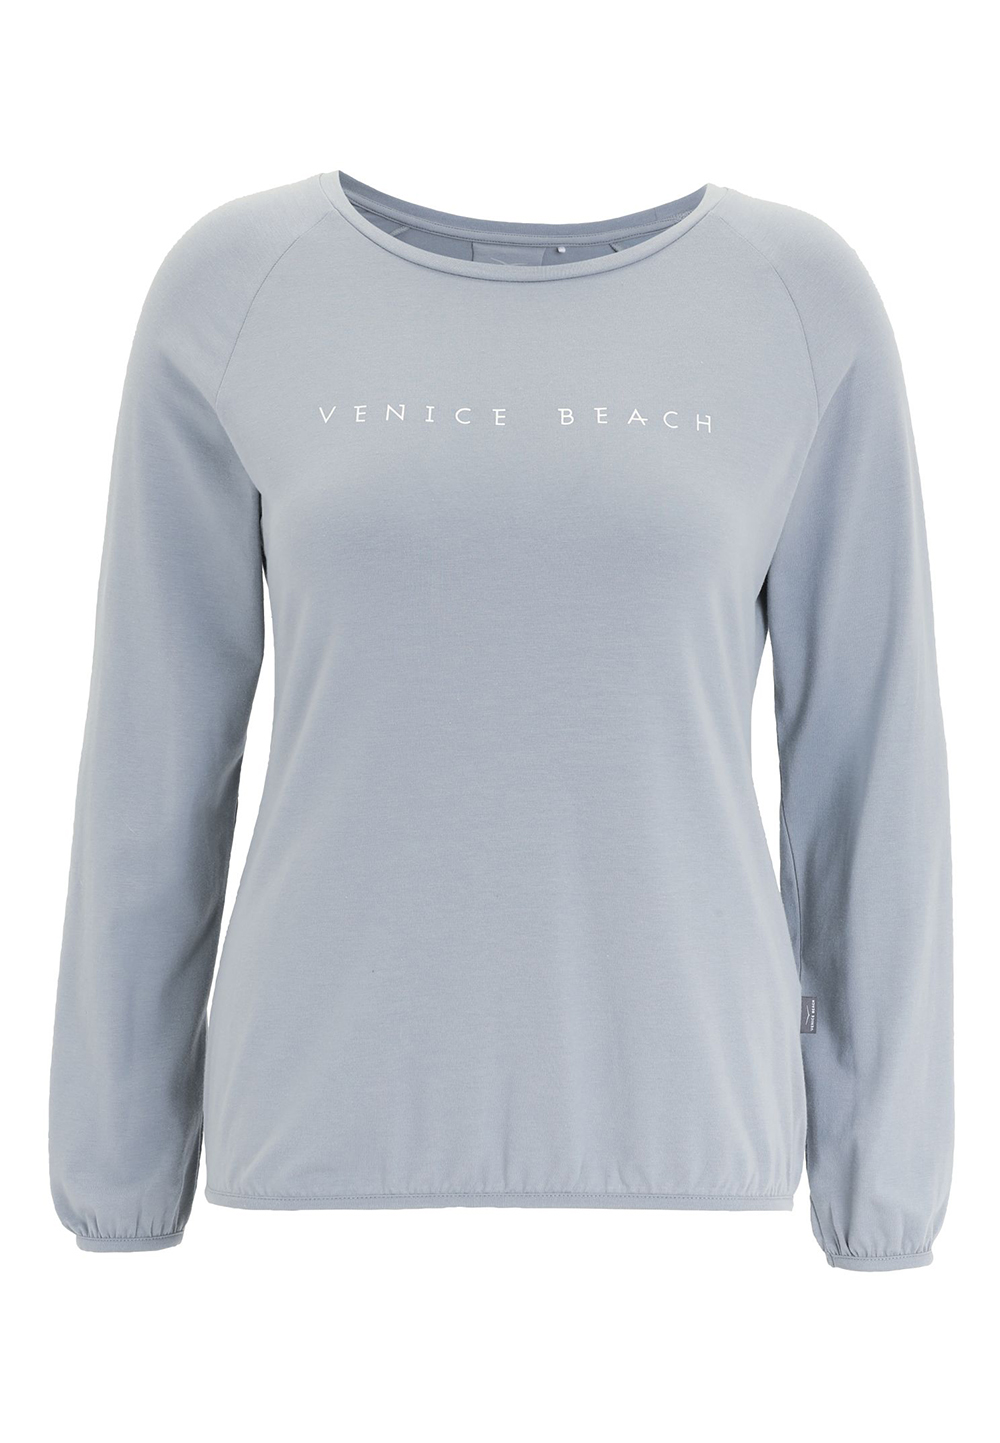 Venice Bach Damen RYLEE Longsleeve Lässiges Longsleeve Shirt aus weichem Jersey 1000010 soft steel